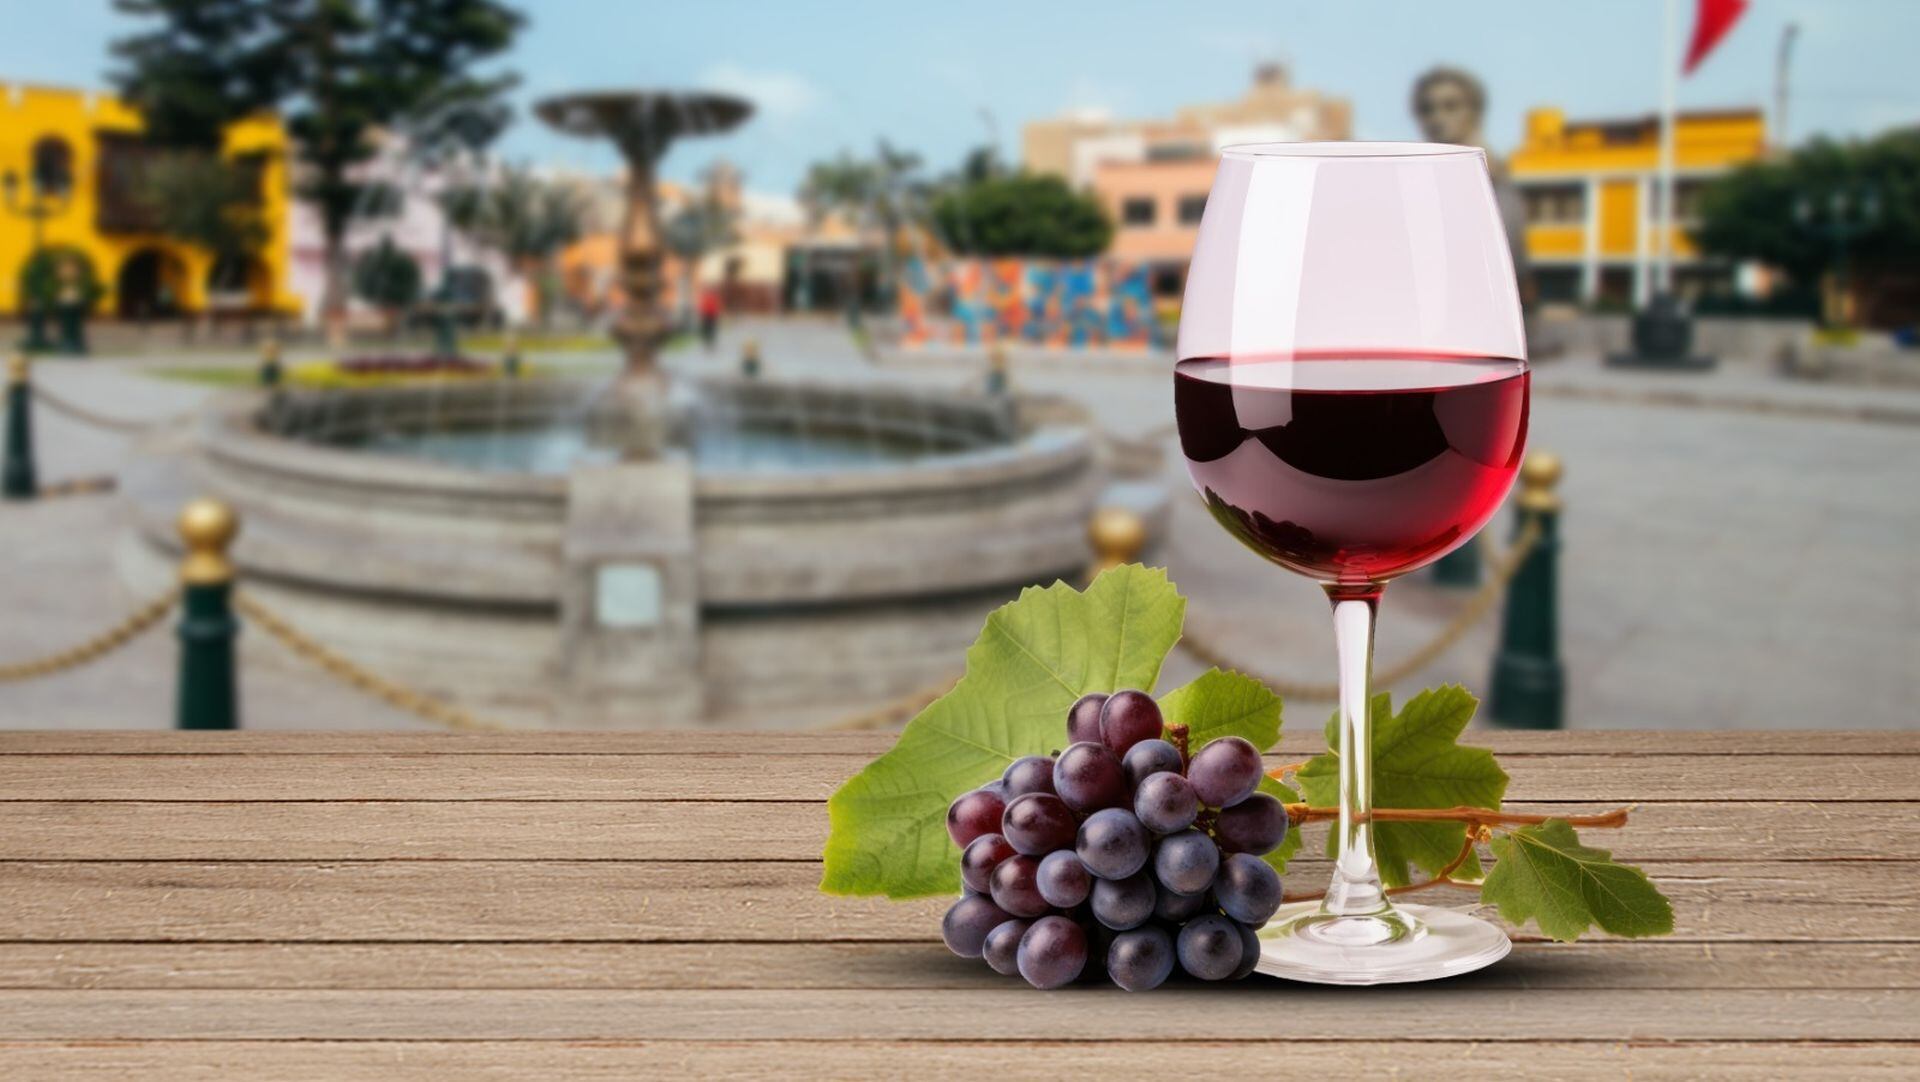 La vendimia es una tradicional celebración en torno a la cultura vitivinícola